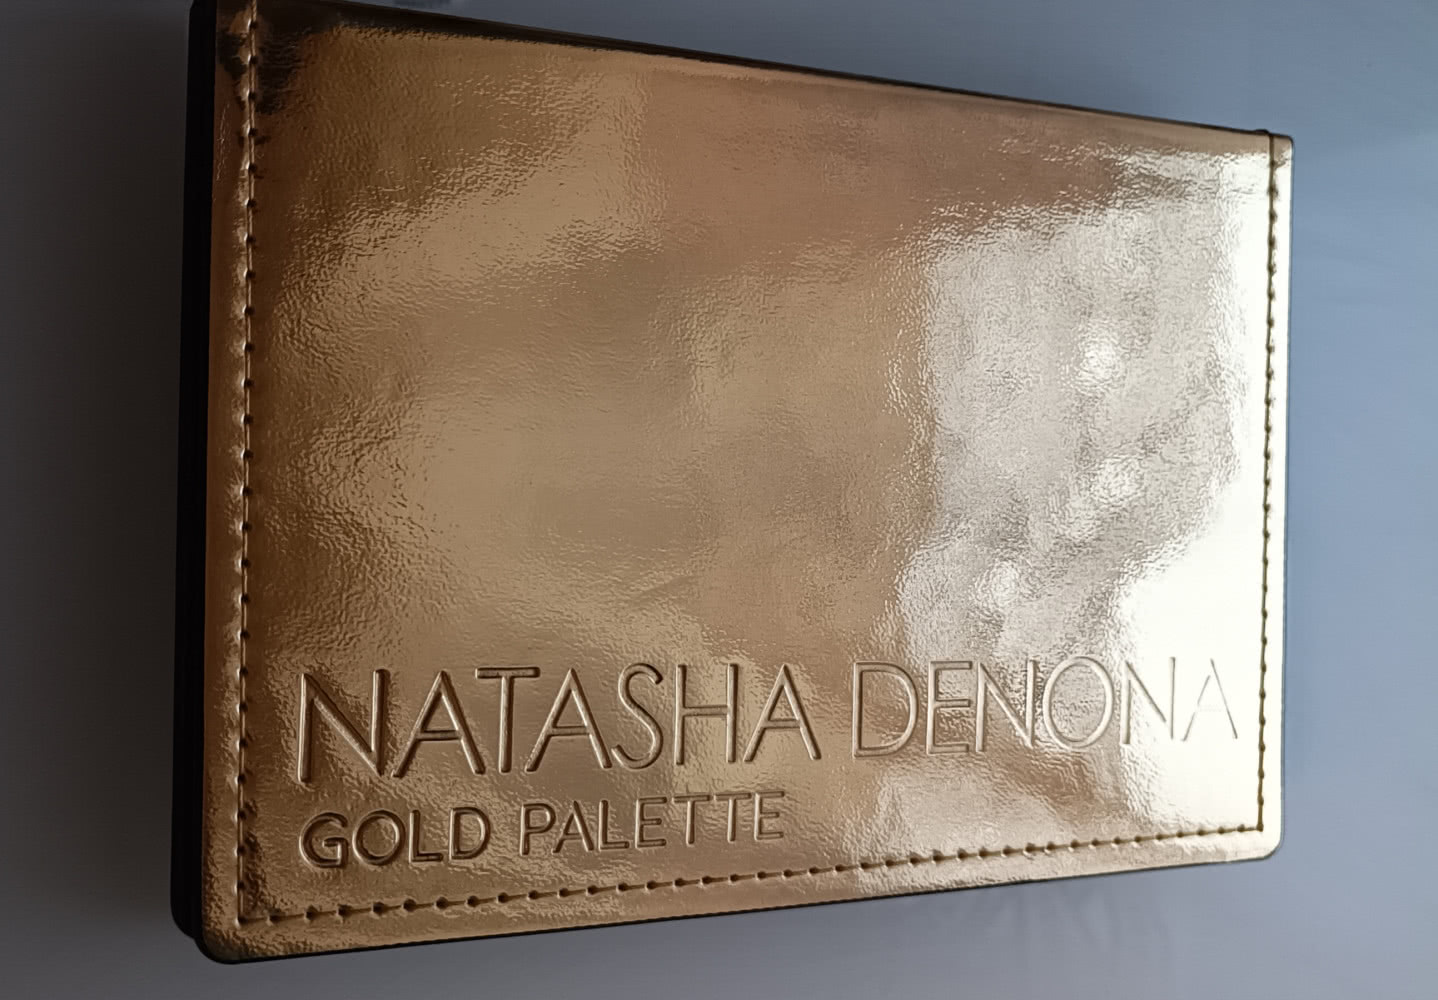 Natasha Denona Gold Palette